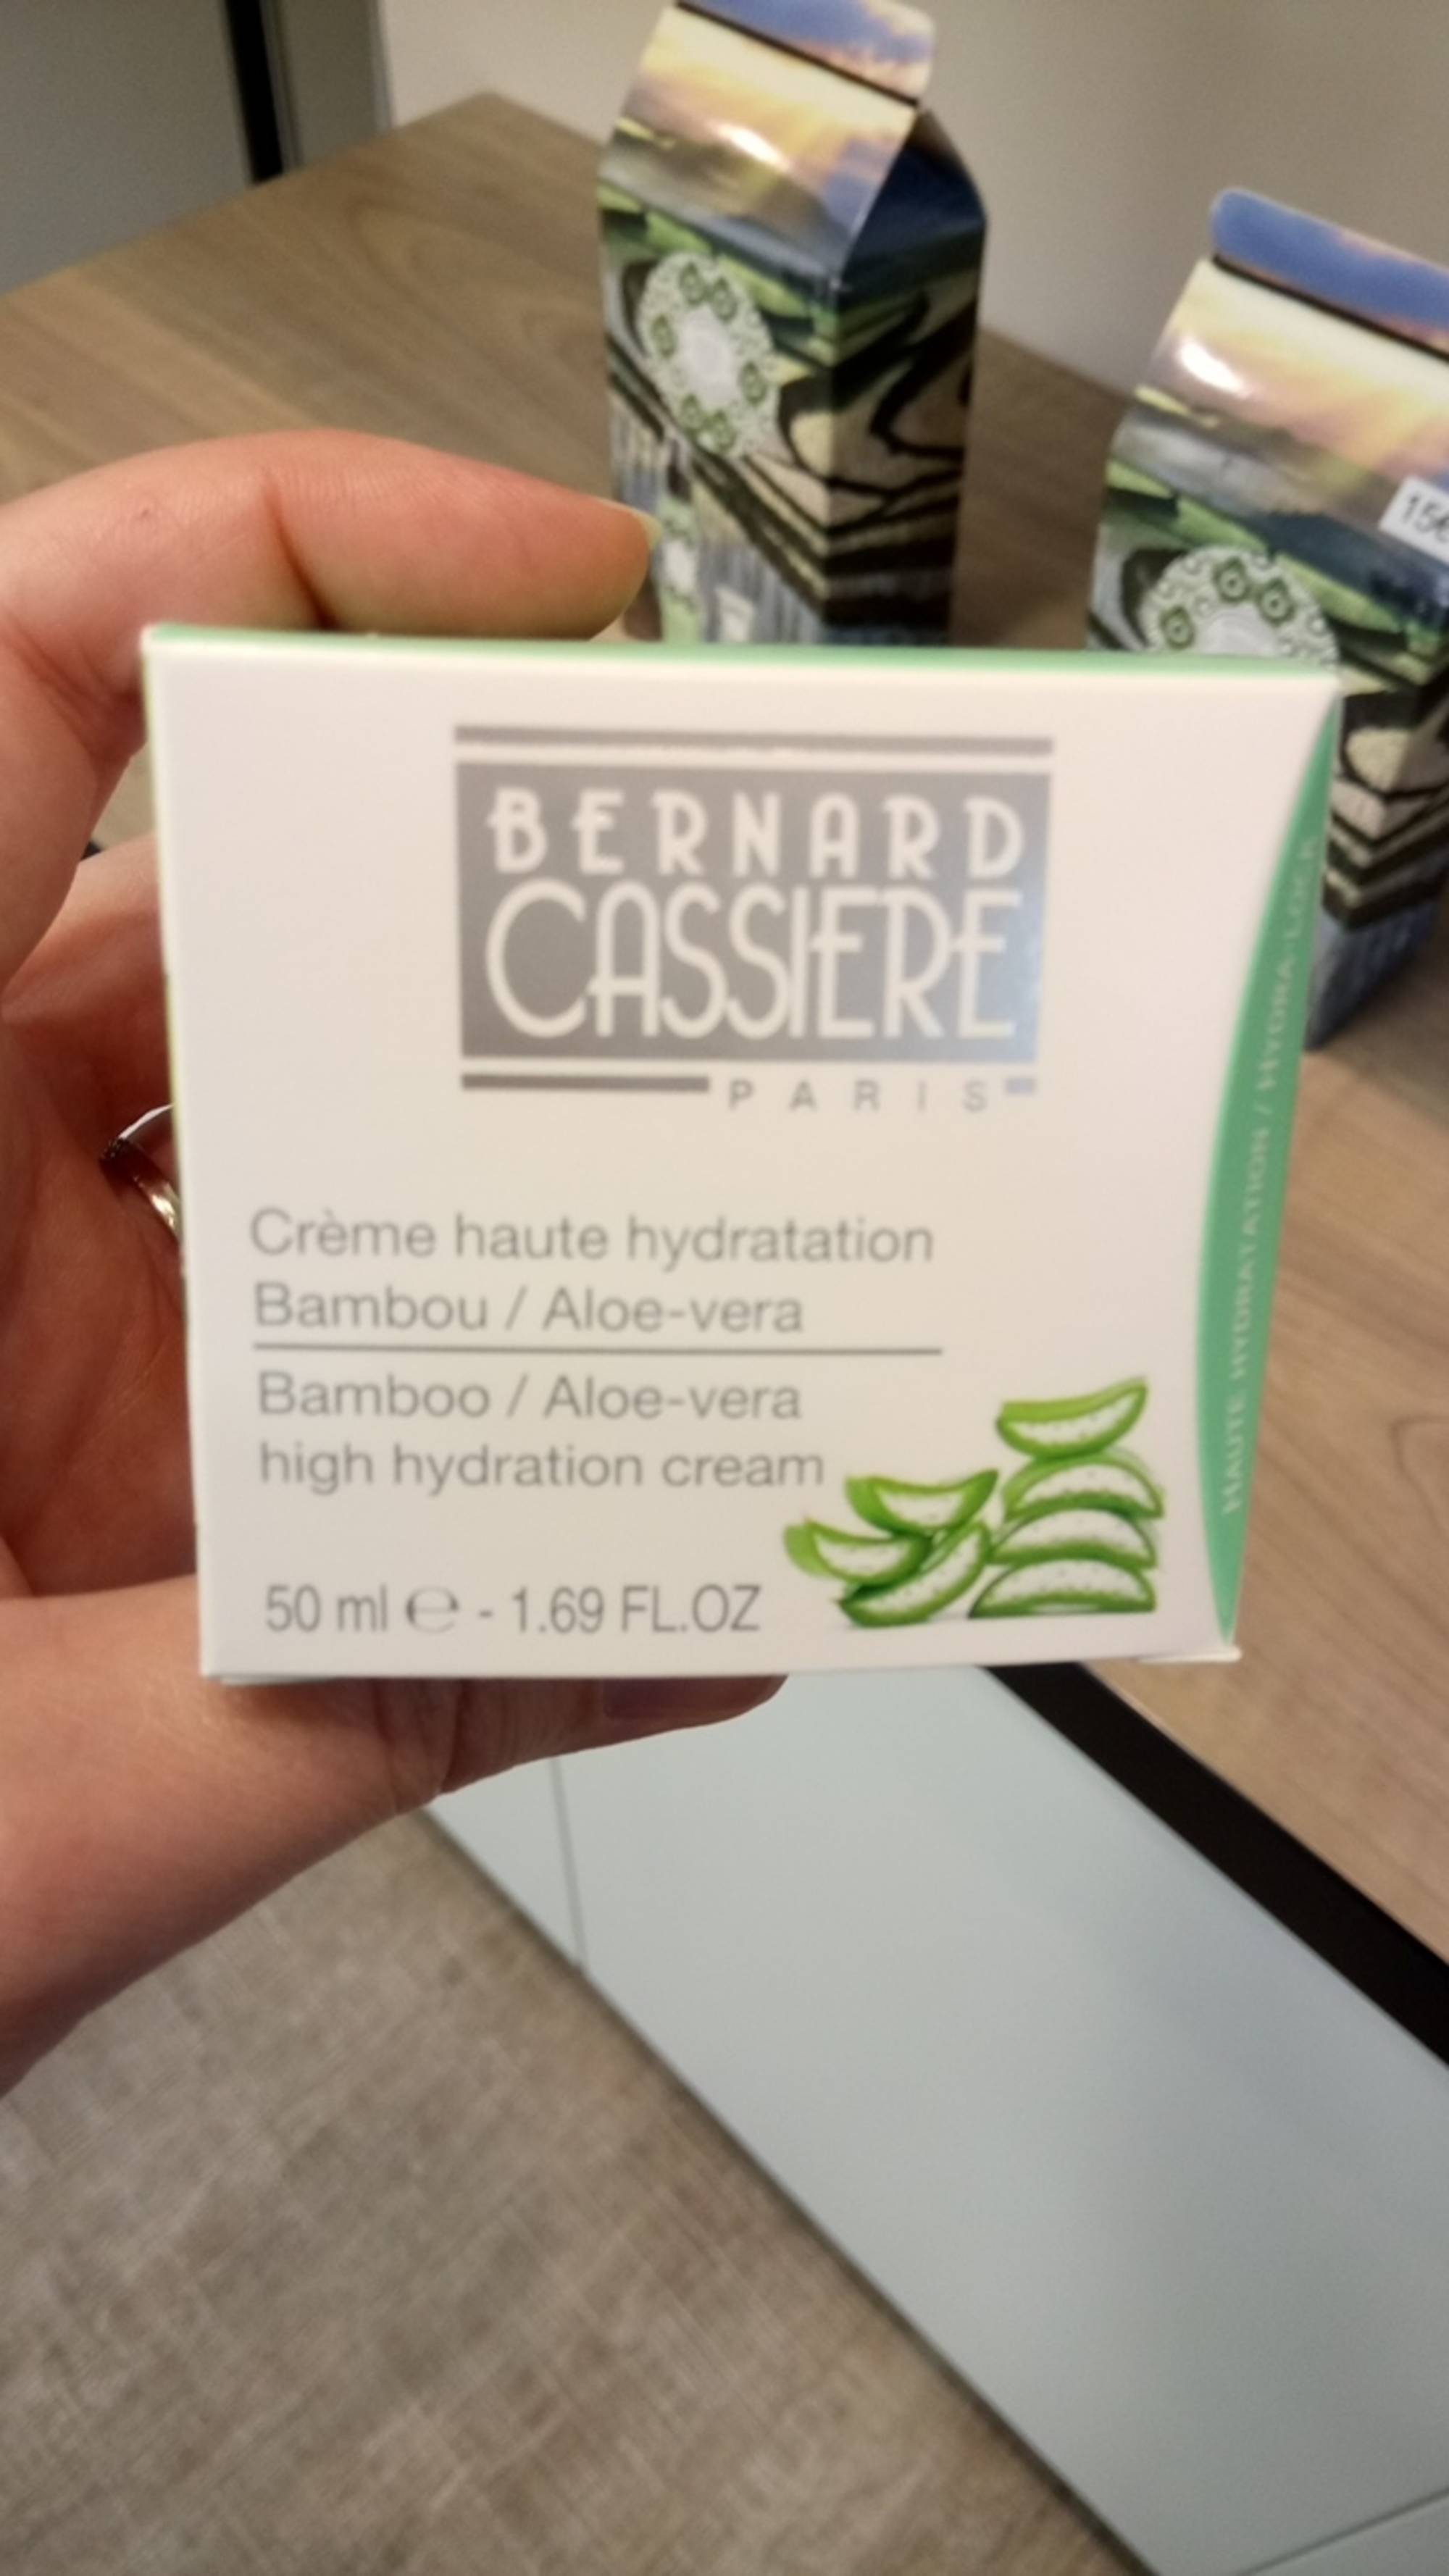 BERNARD CASSIÈRE PARIS - Crème haute hydratation 